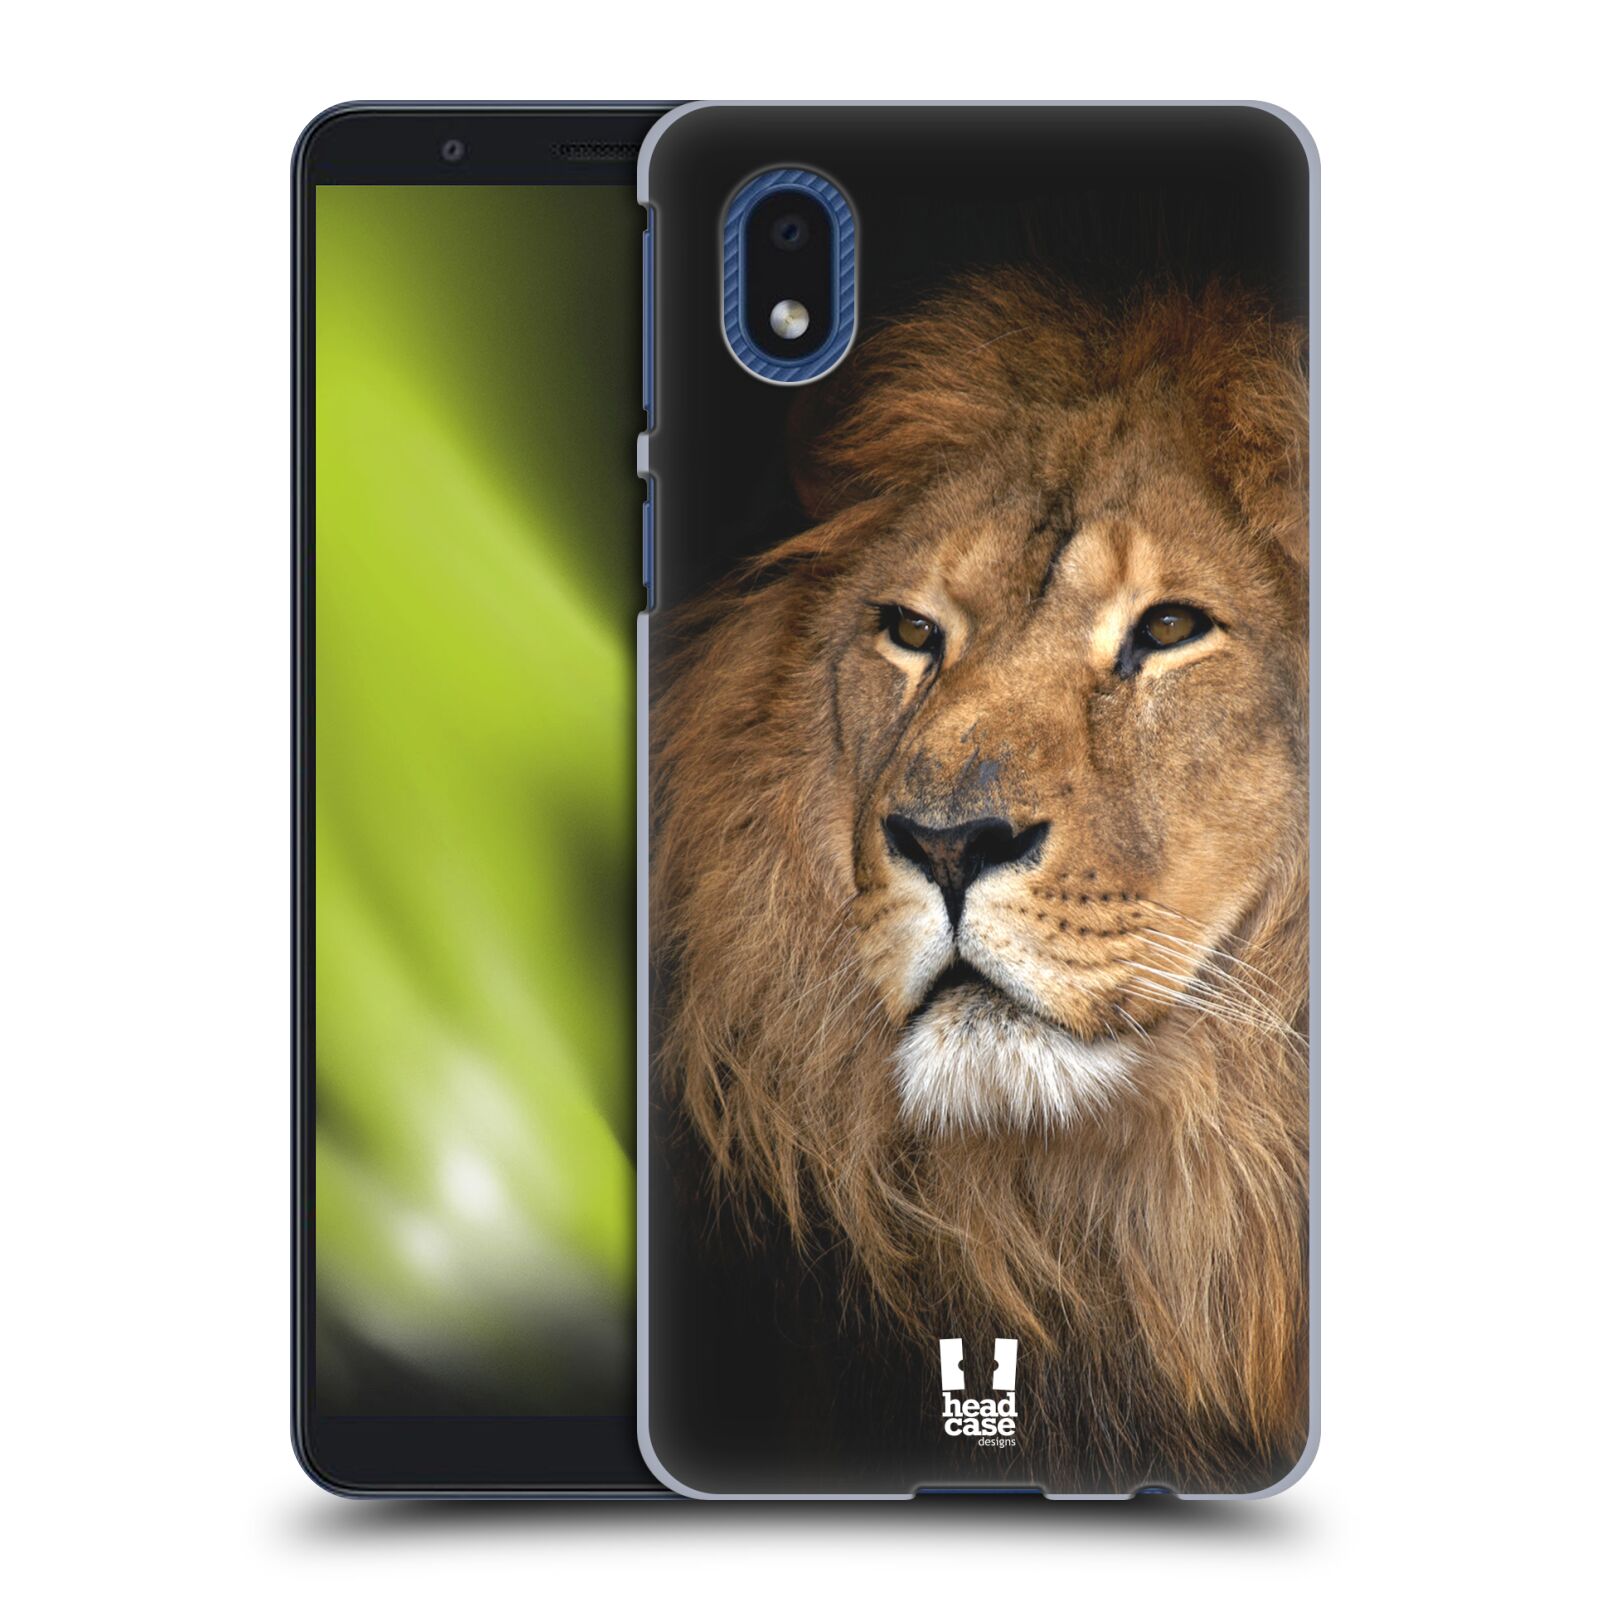 Zadní obal pro mobil Samsung Galaxy A01 CORE - HEAD CASE - Svět zvířat král zvířat Lev